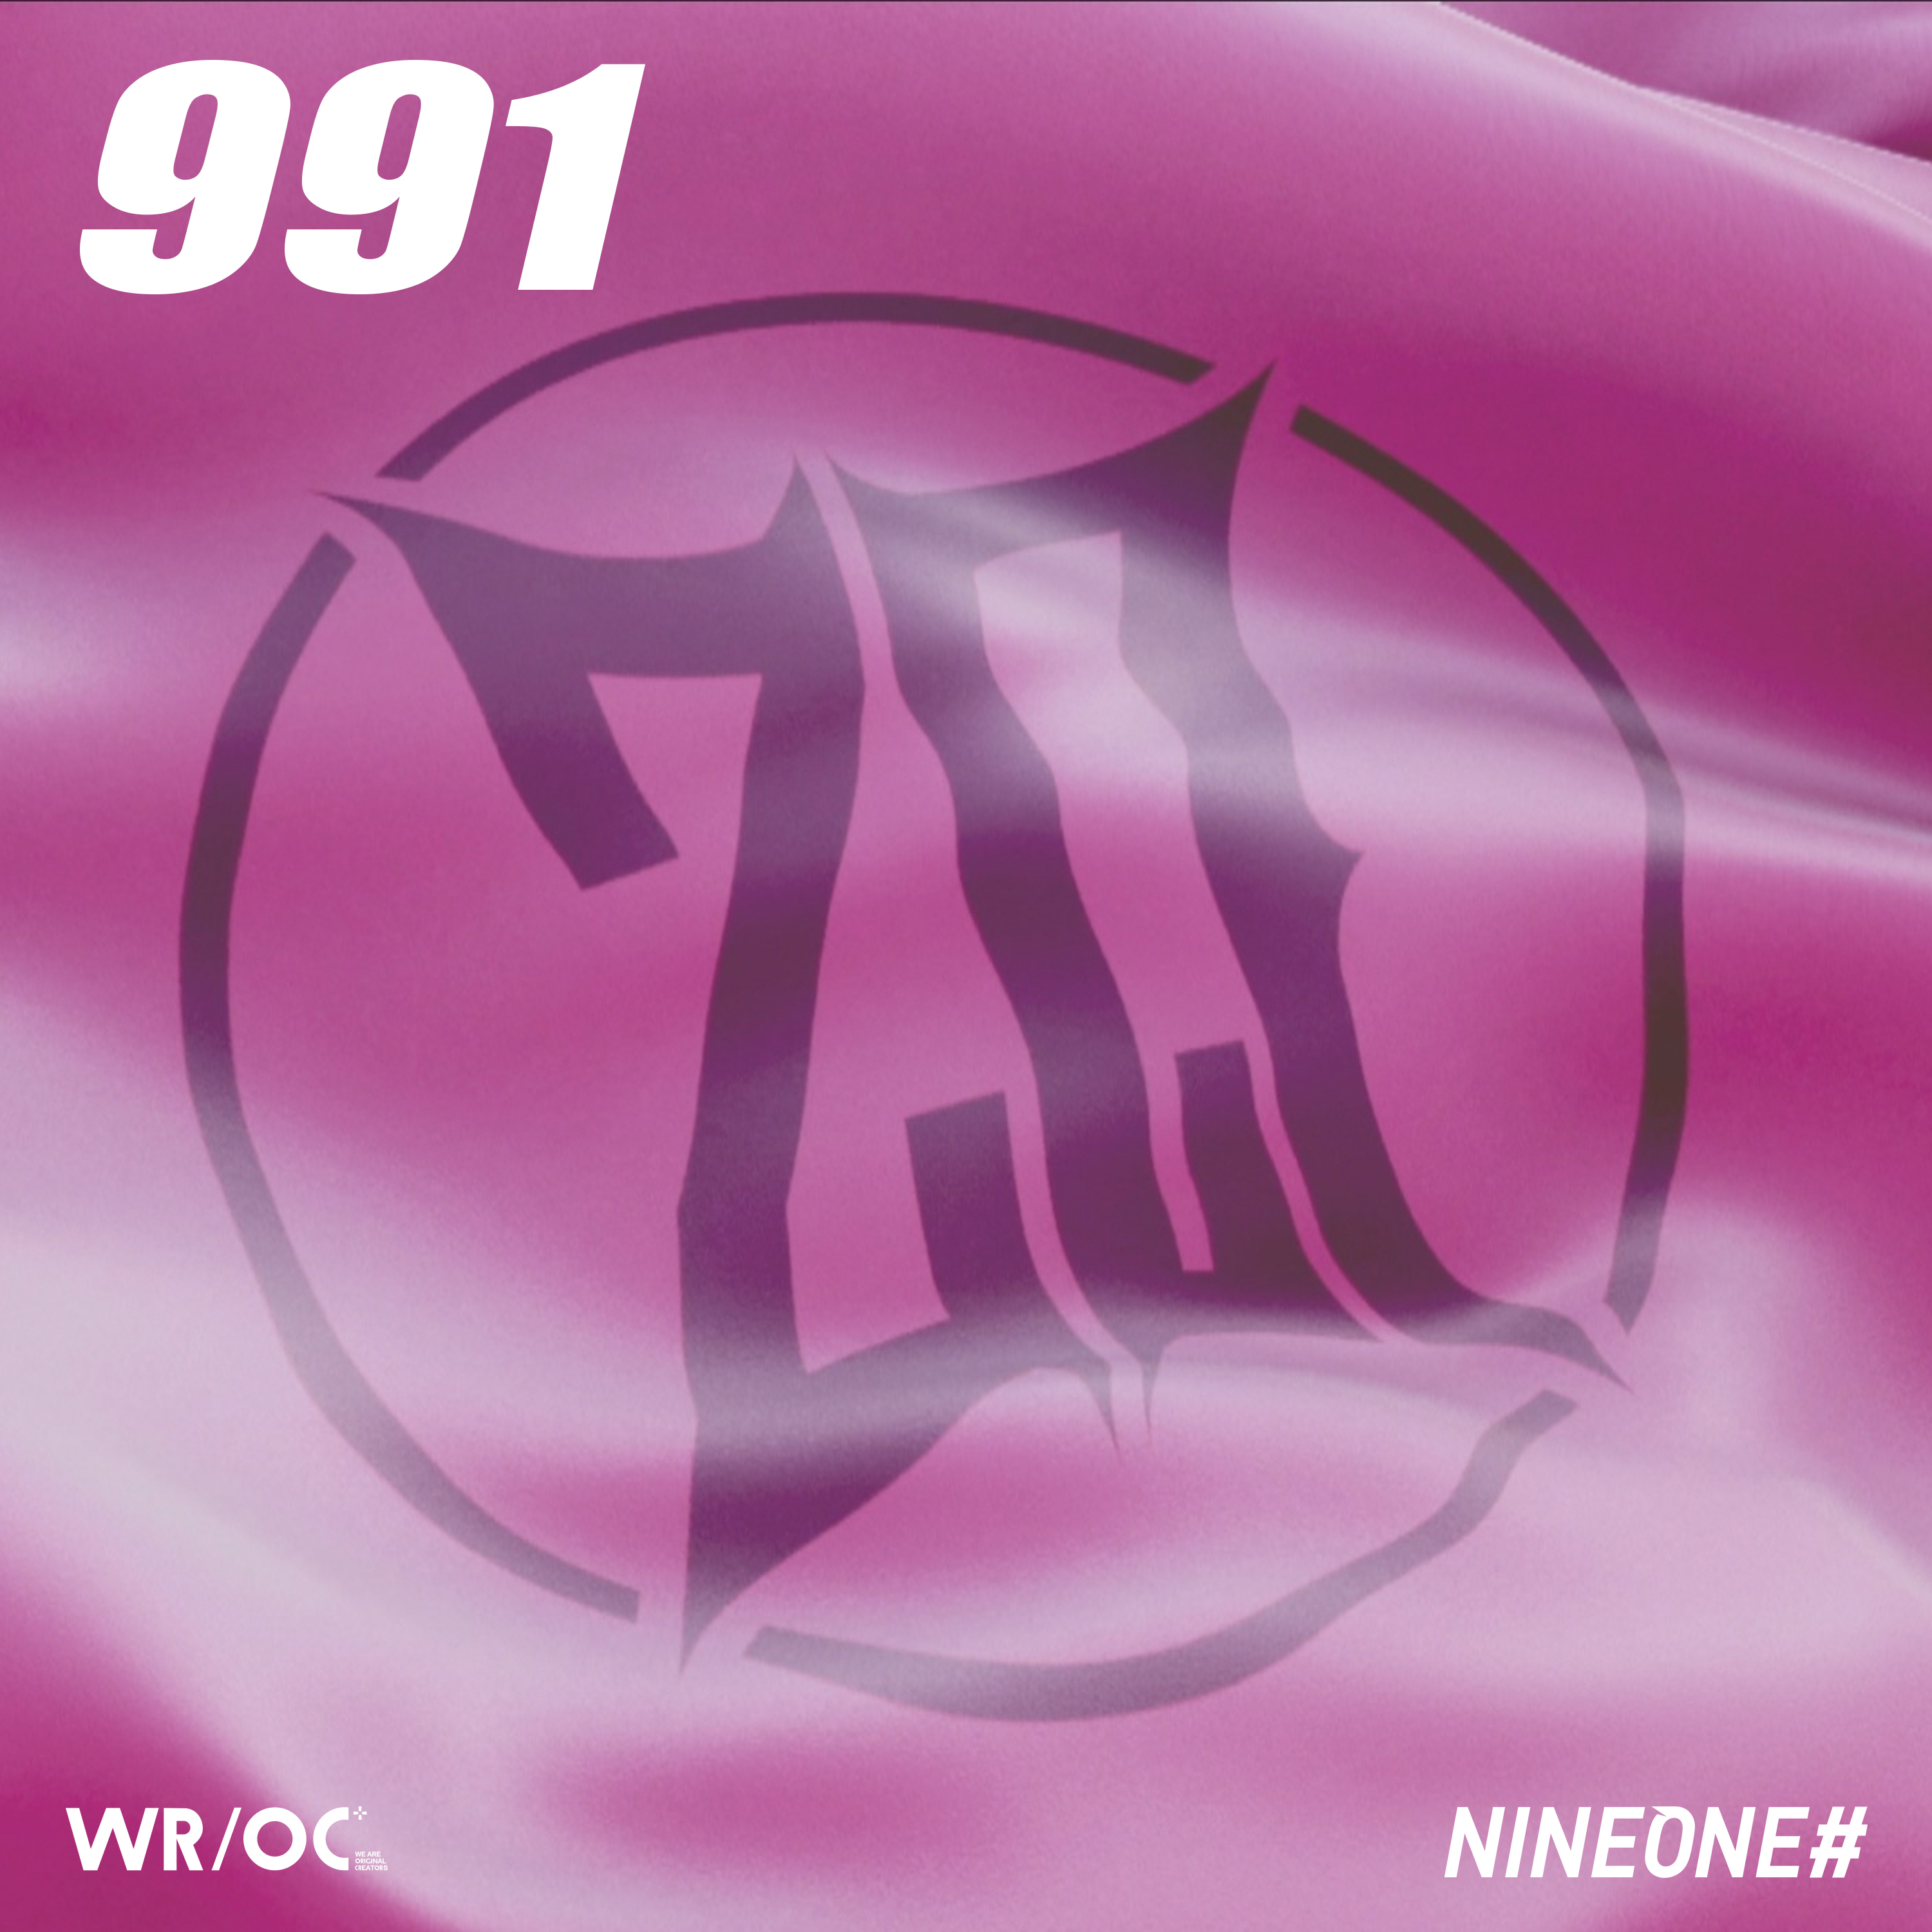 991歌词 歌手NINEONE#-专辑991-单曲《991》LRC歌词下载